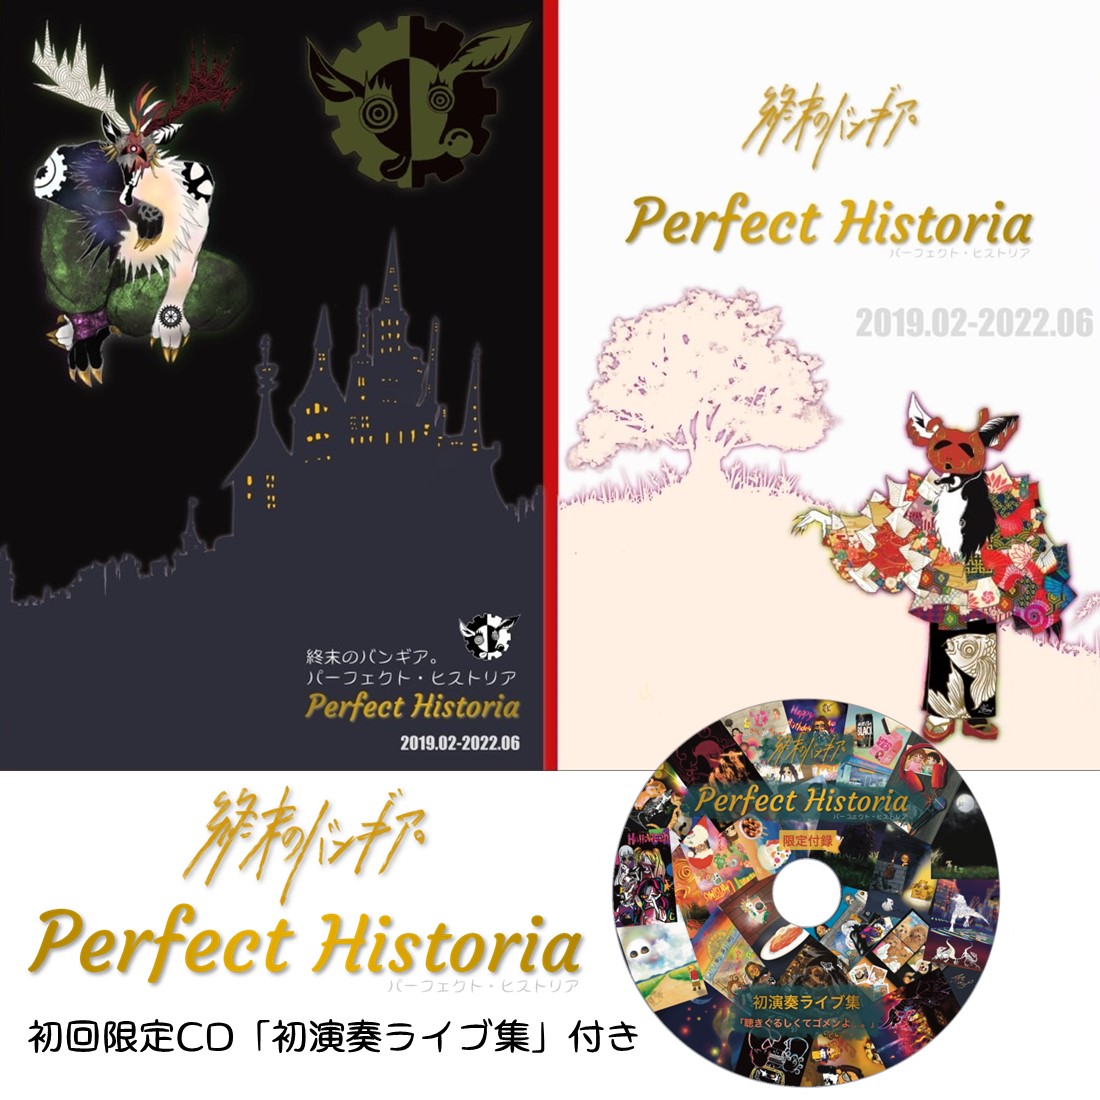 初回限定CD付きコンセプトアート集「パーフェクト・ヒストリア」